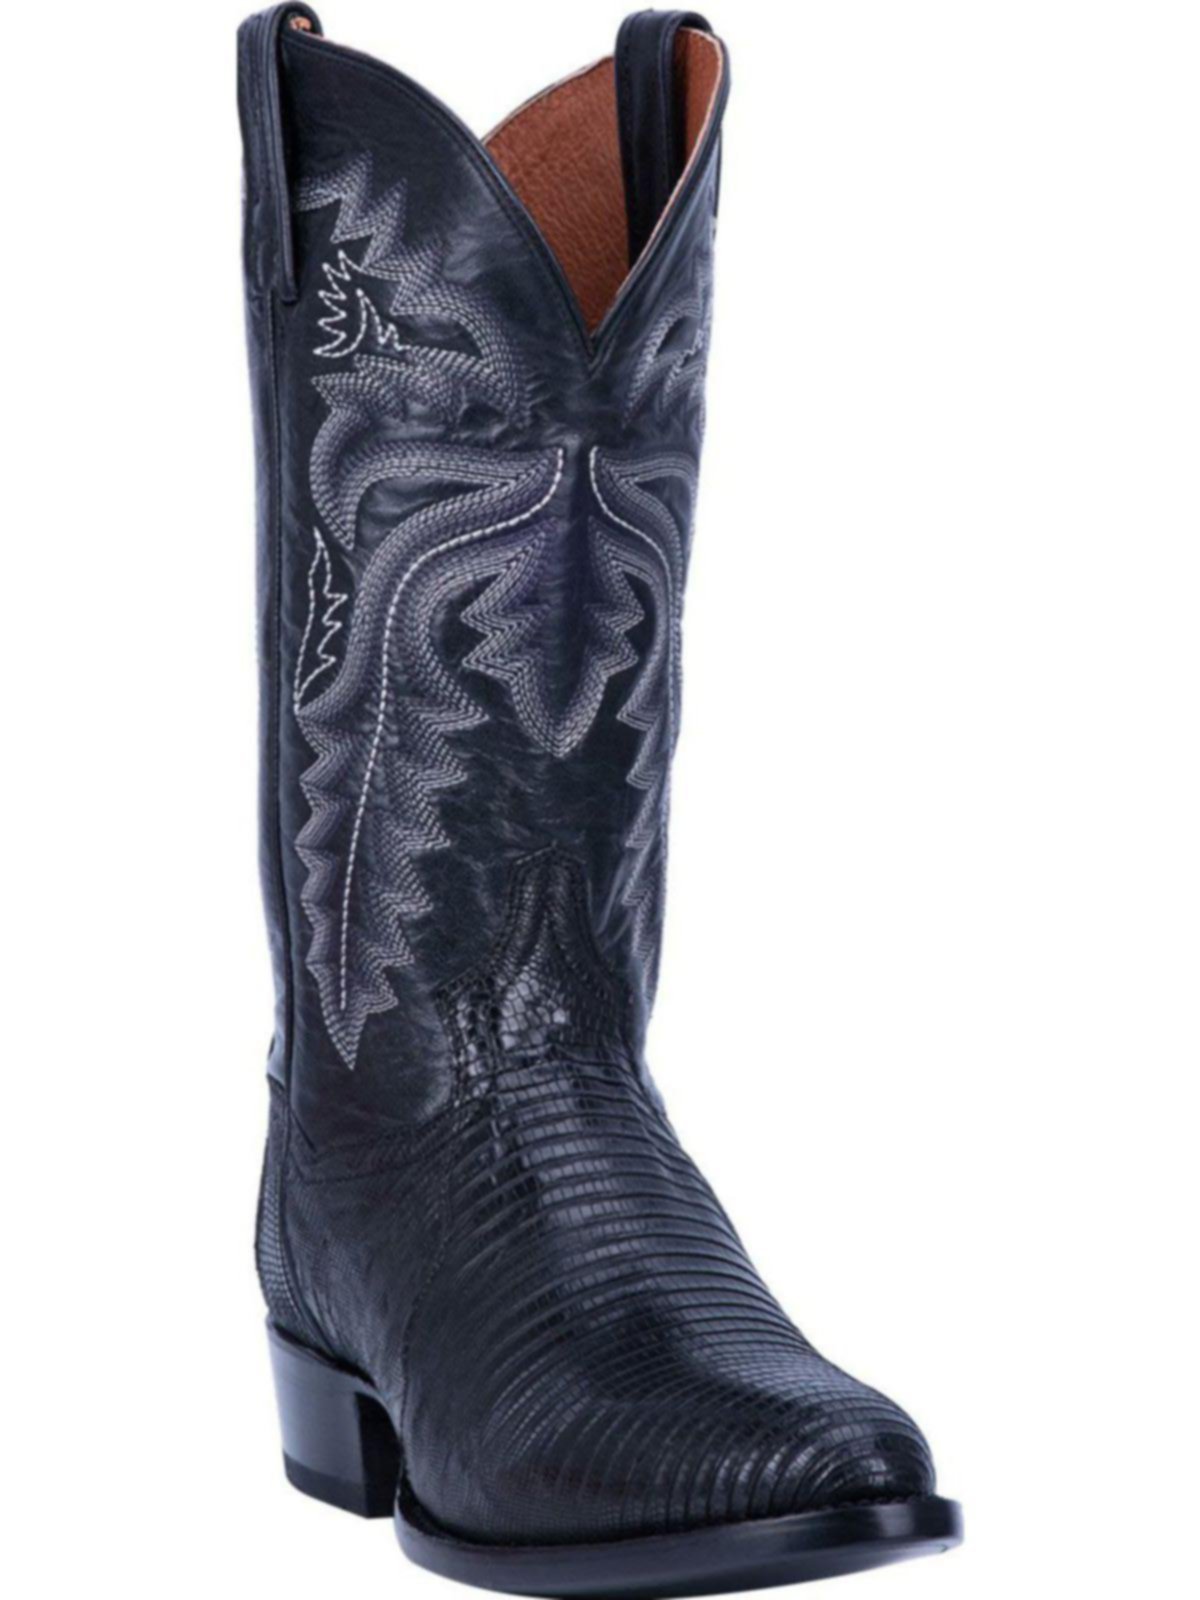 exotic cowboy boots